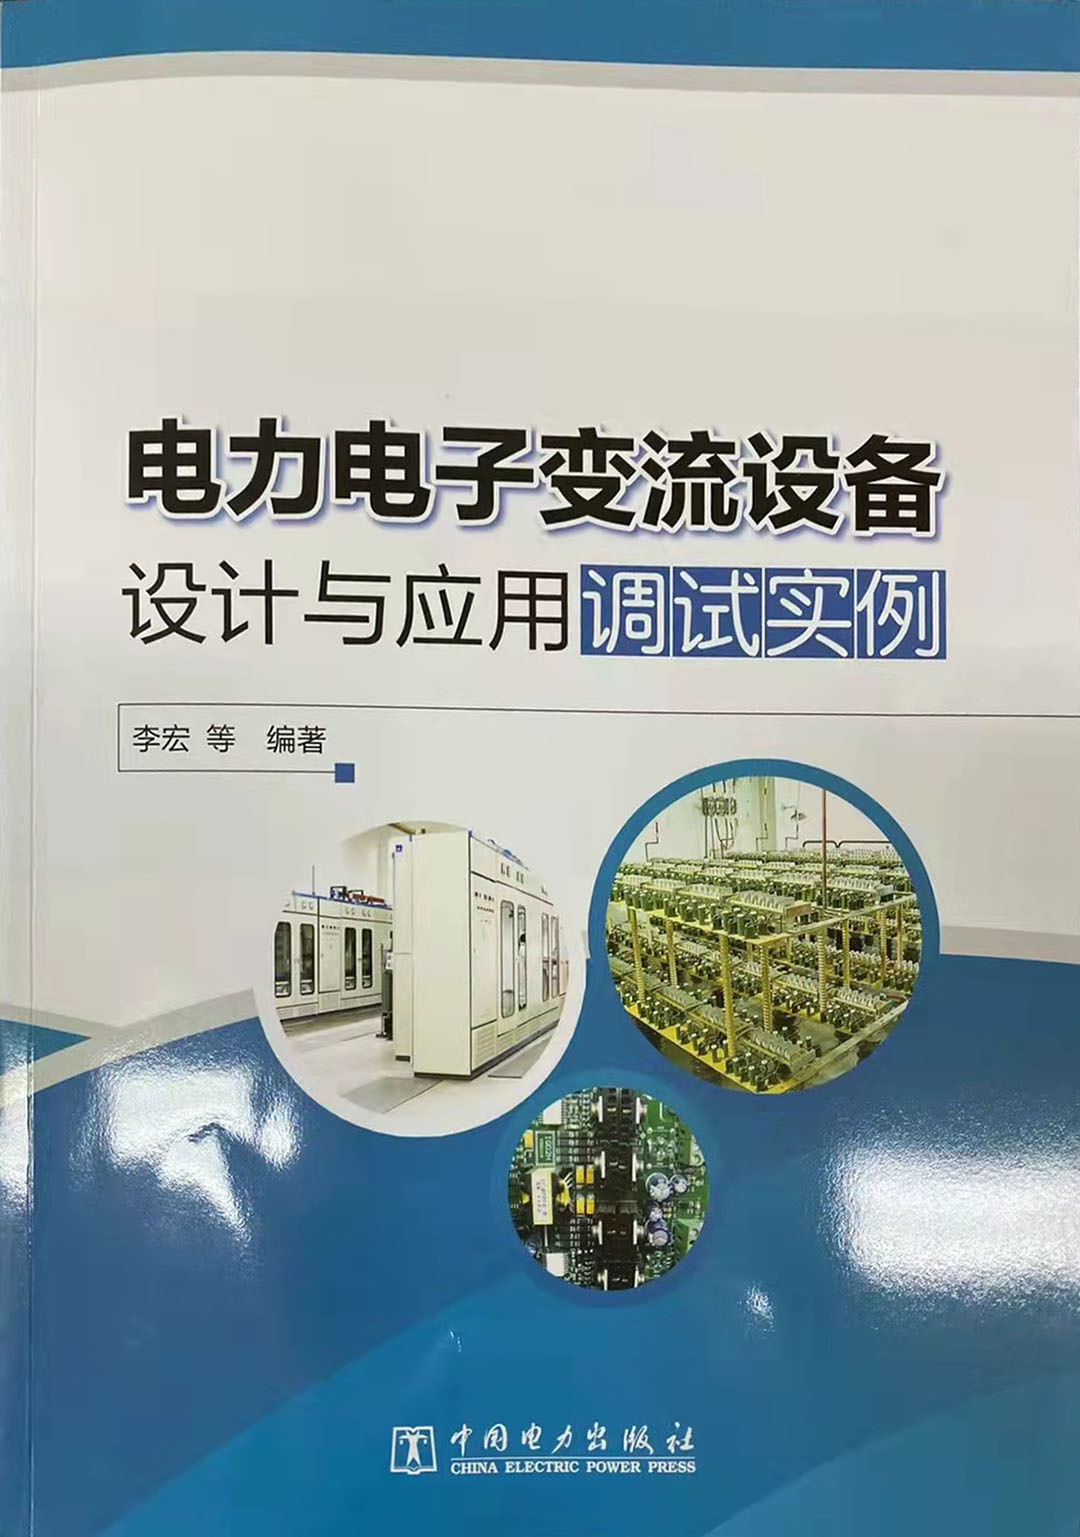 自主創新、科技引領——銅牛整流變載入中國電力出版社 《電力電子變流設備》